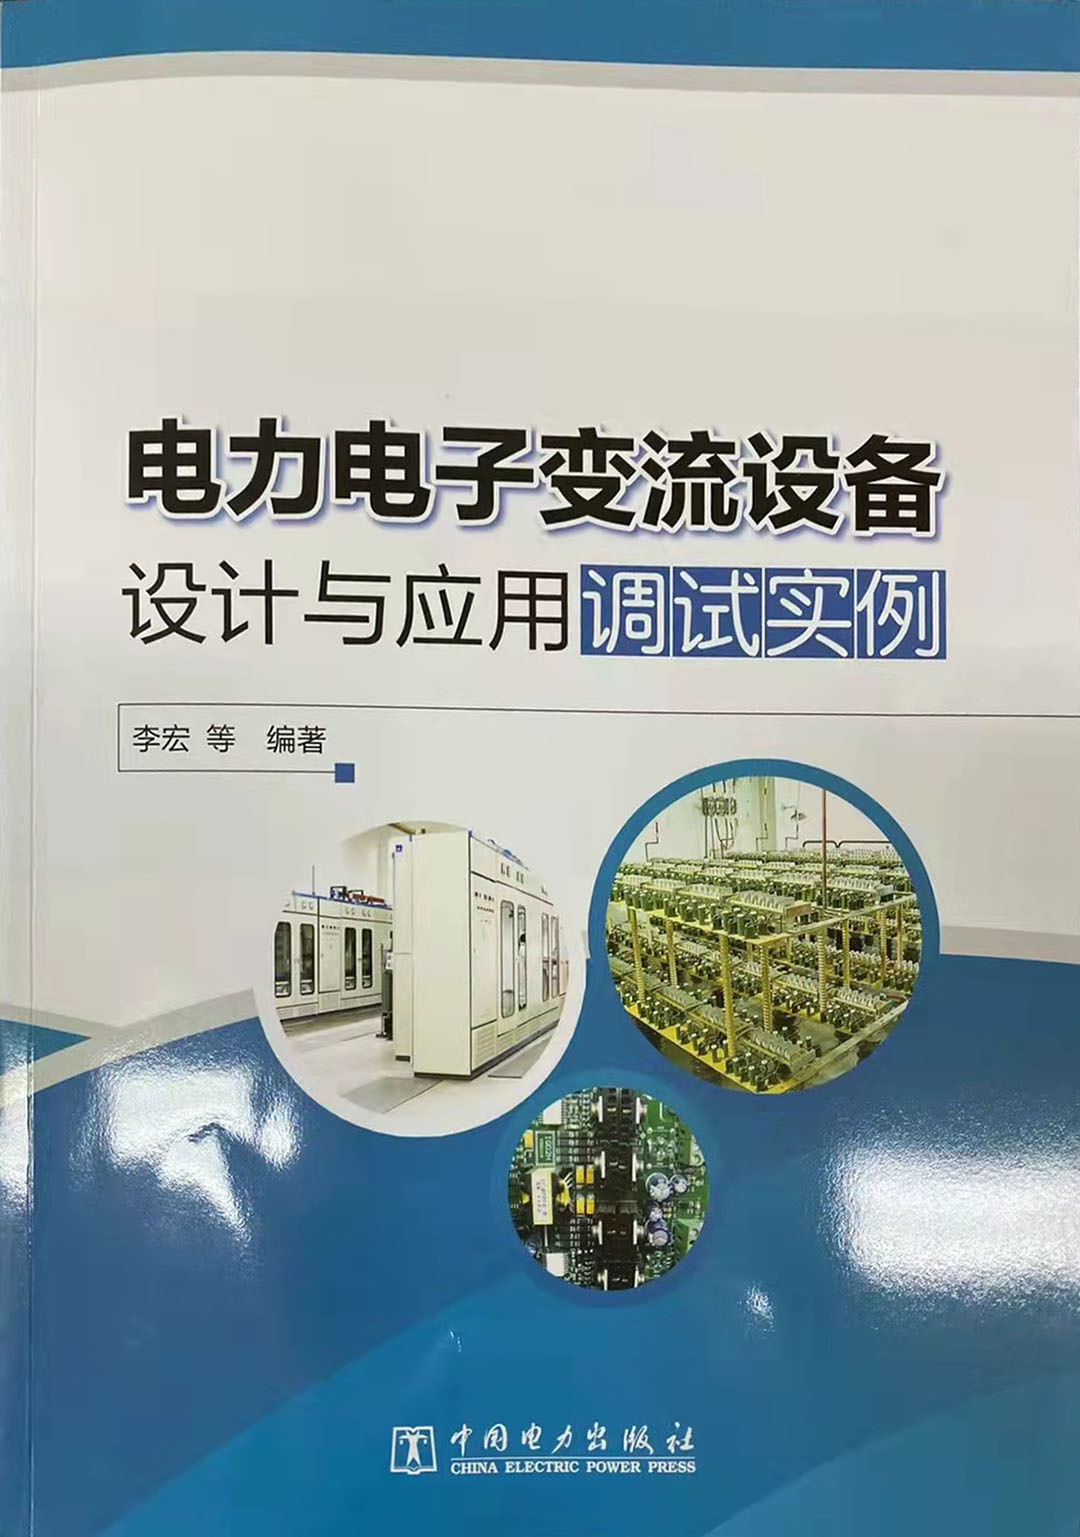 自主創新、科技引領——銅牛整流變載入中國電力出版社 《電力電子變流設備》